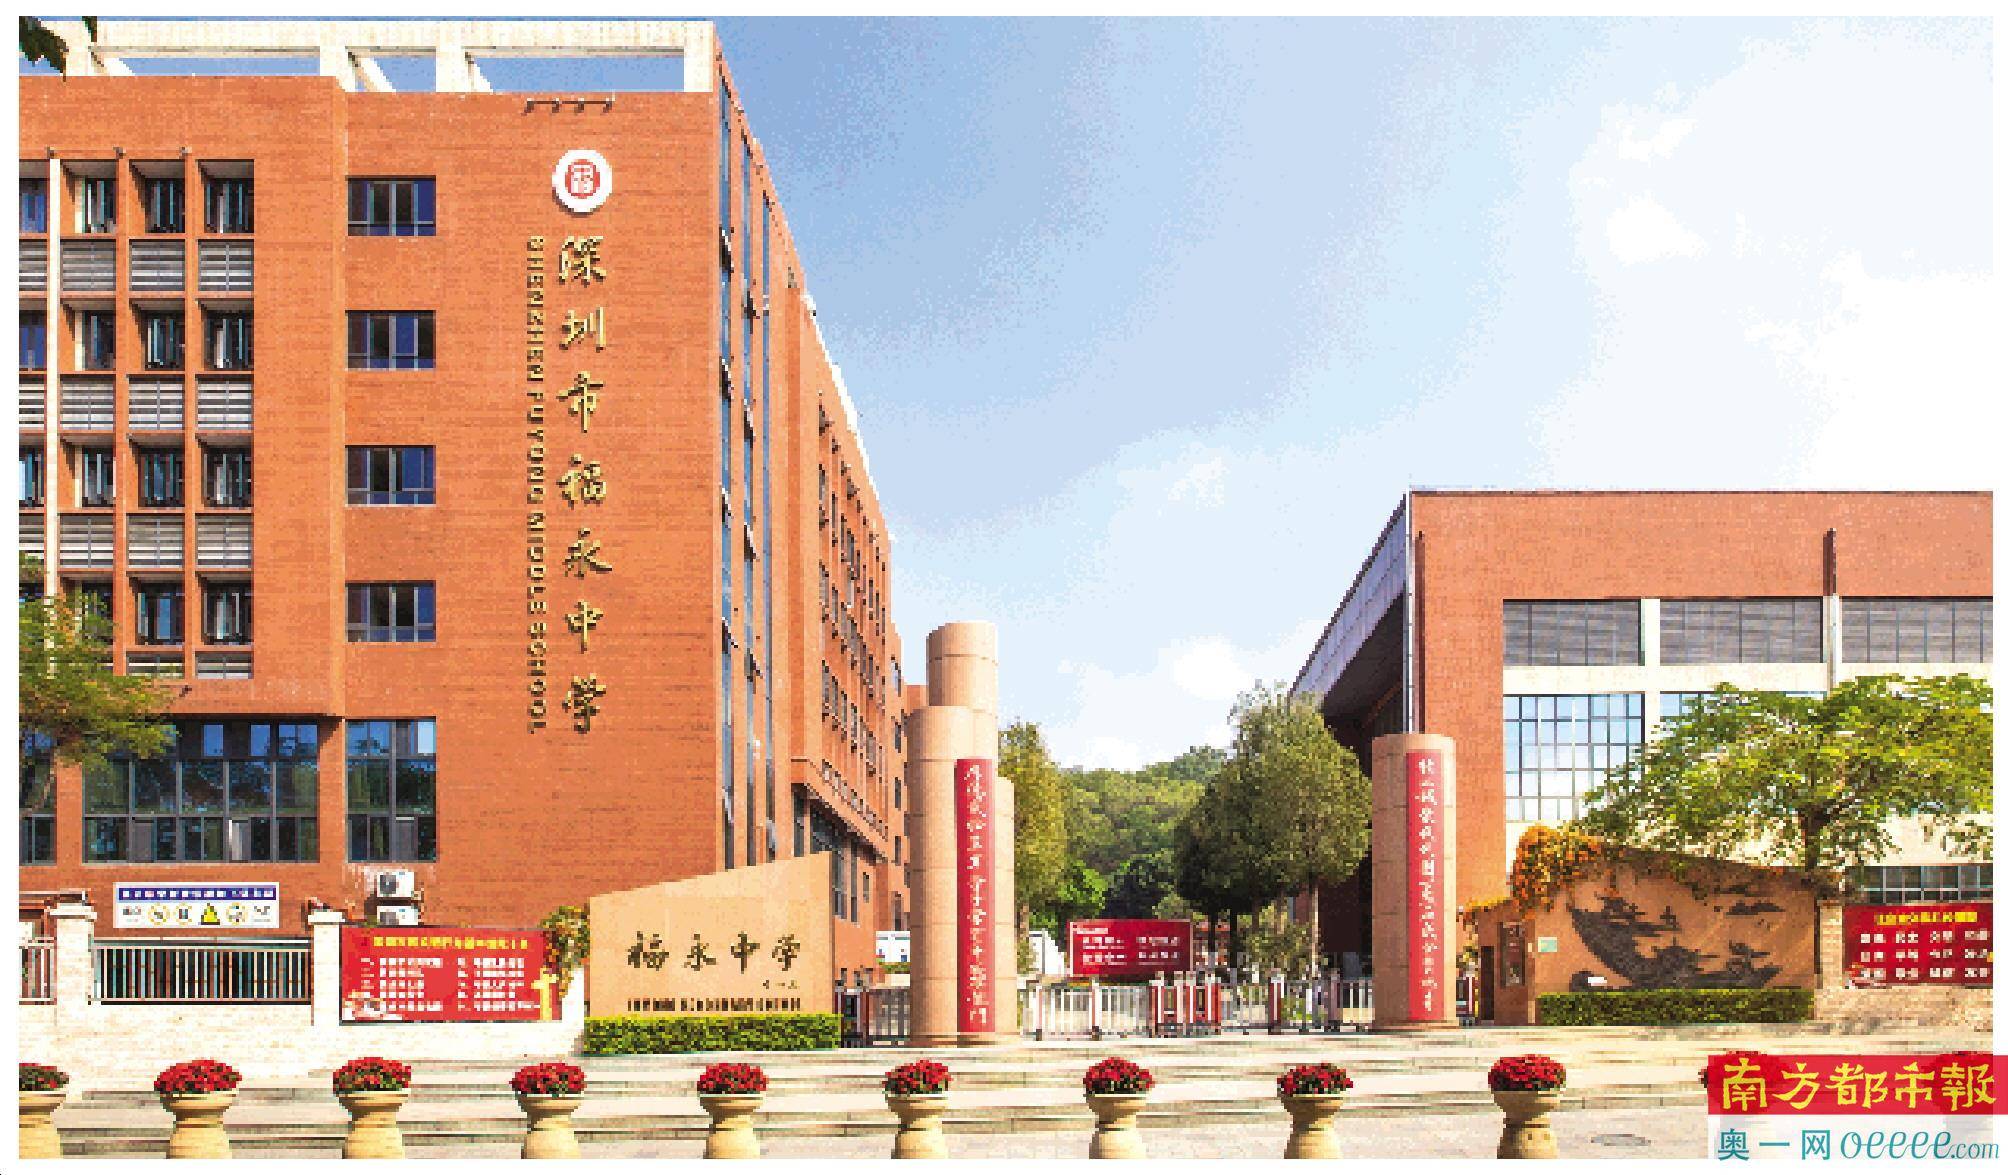 深圳市福永中学:打造幸福生态校园,领跑区域教育优质发展